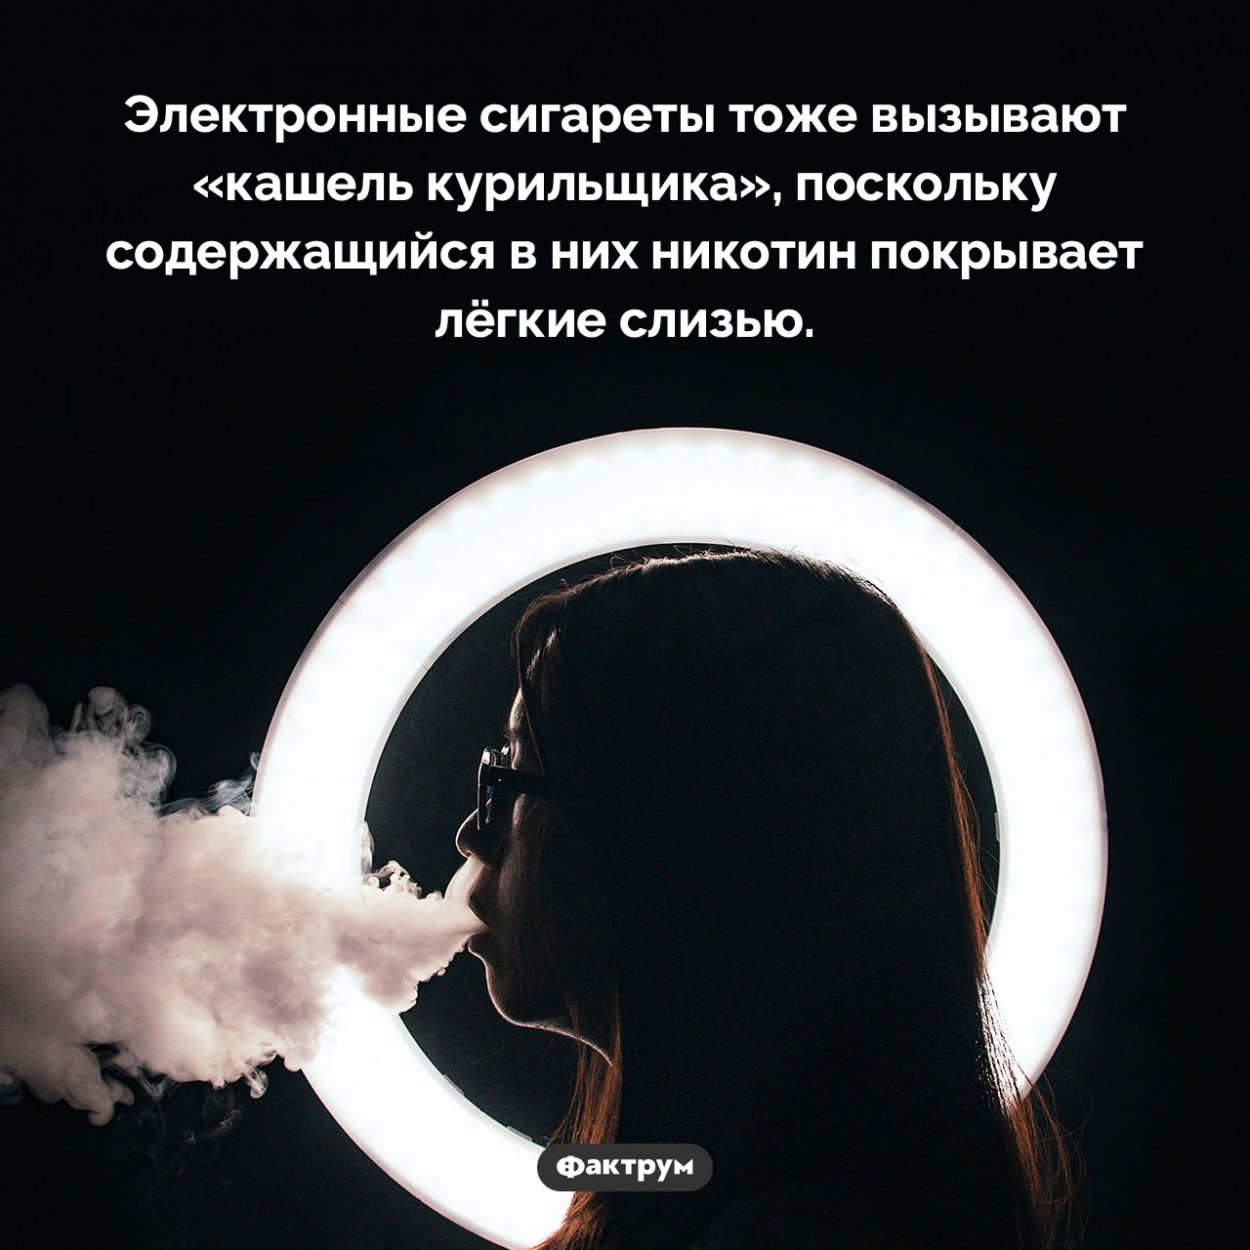 «Кашель курильщика» от электронных сигарет. Электронные сигареты тоже вызывают «кашель курильщика», поскольку содержащийся в них никотин покрывает лёгкие слизью.